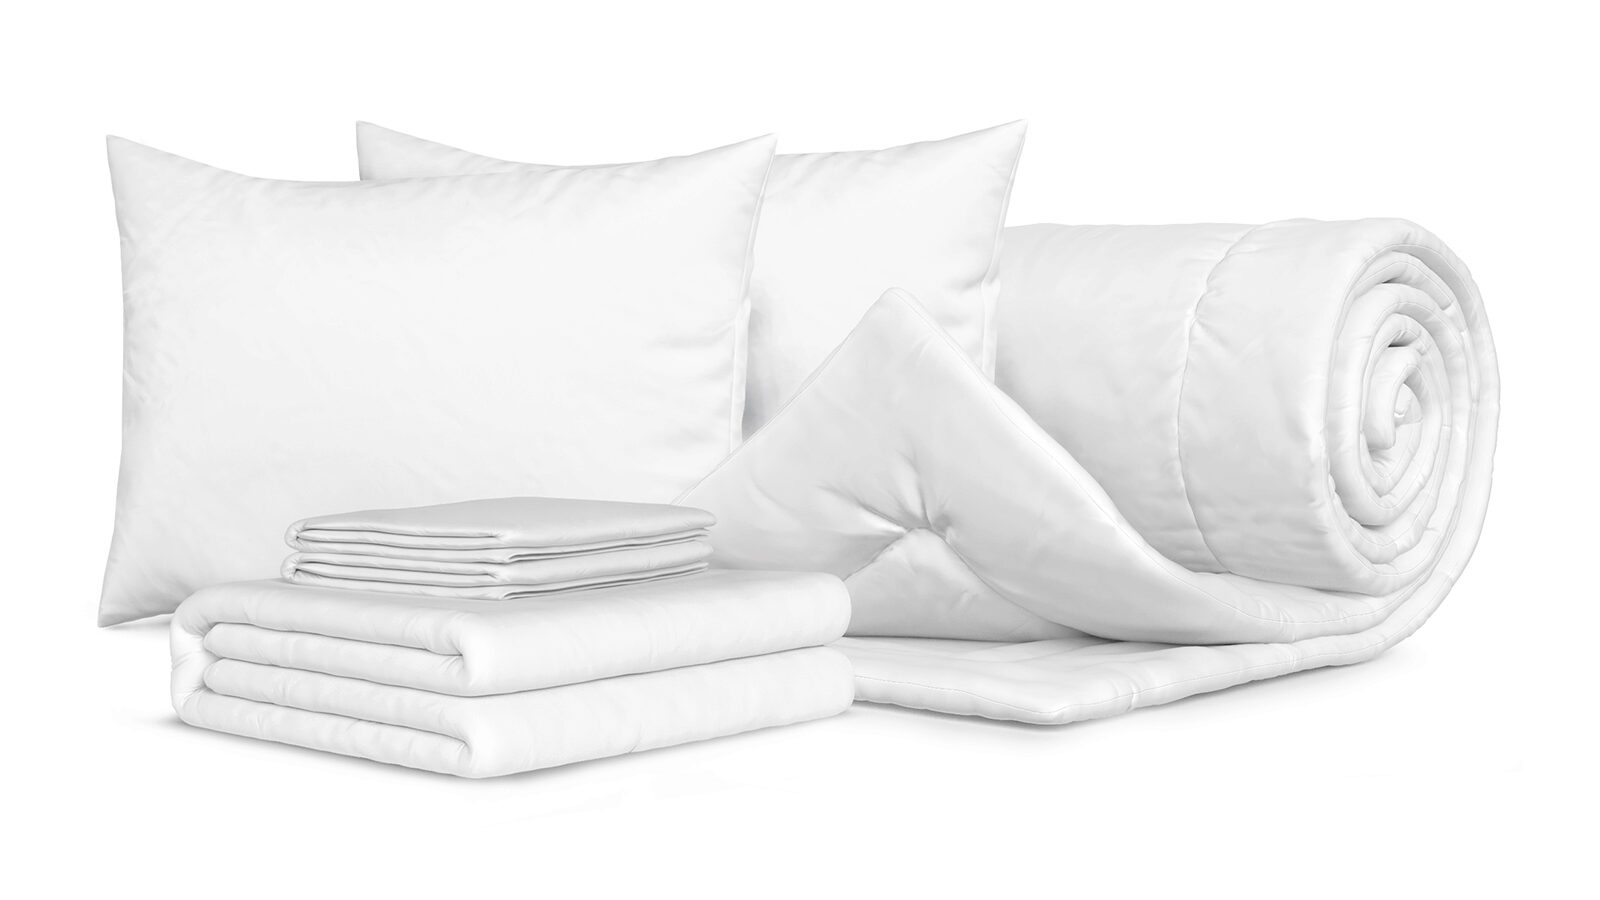 Комплект Одеяло Beat + 2 Подушки Sky + Комплект постельного белья Comfort Cotton, цвет: Белый